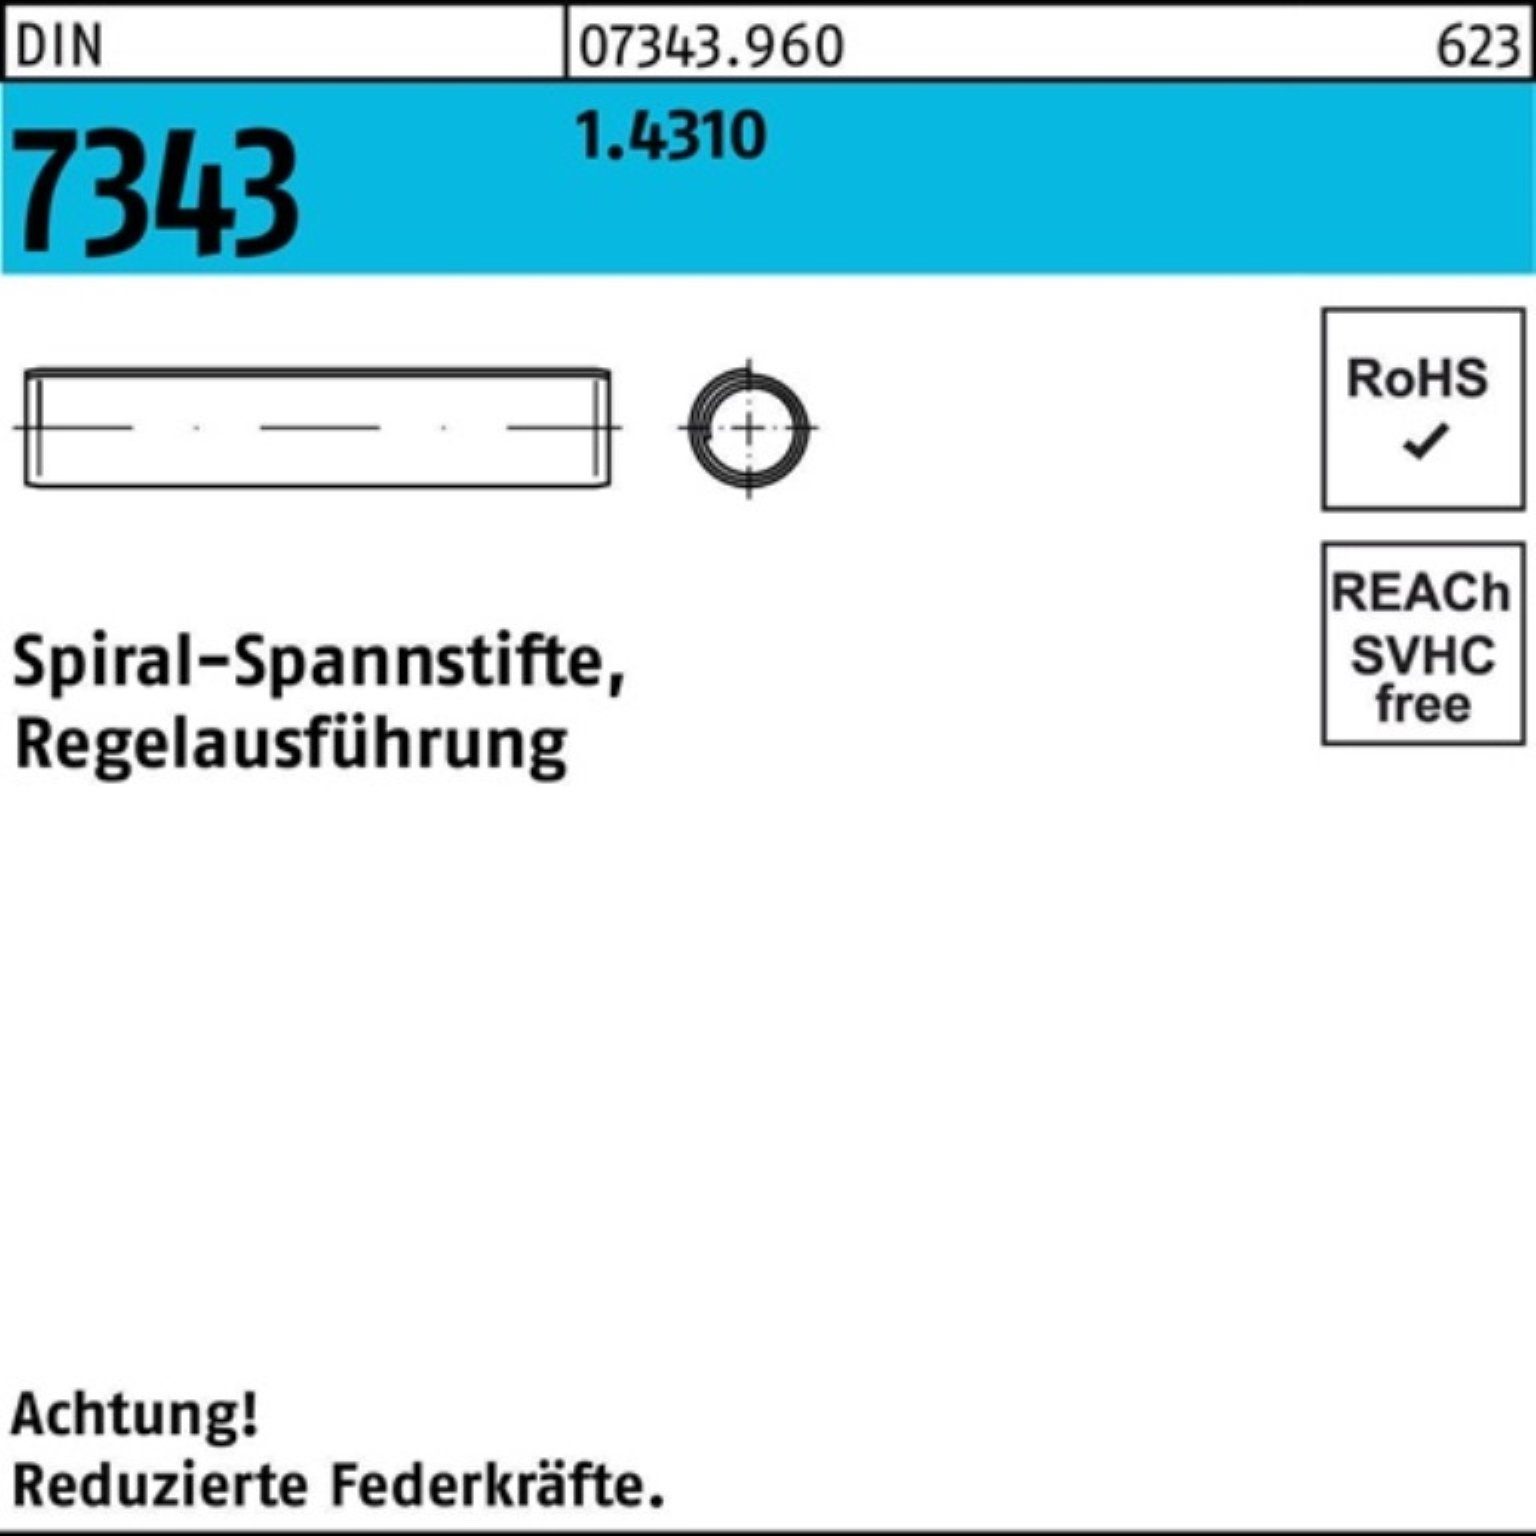 8750 12 2x Spannstift Reyher Regelausf. Pack 1.4310 Spiralspannstift 7343/ISO DIN 1000er